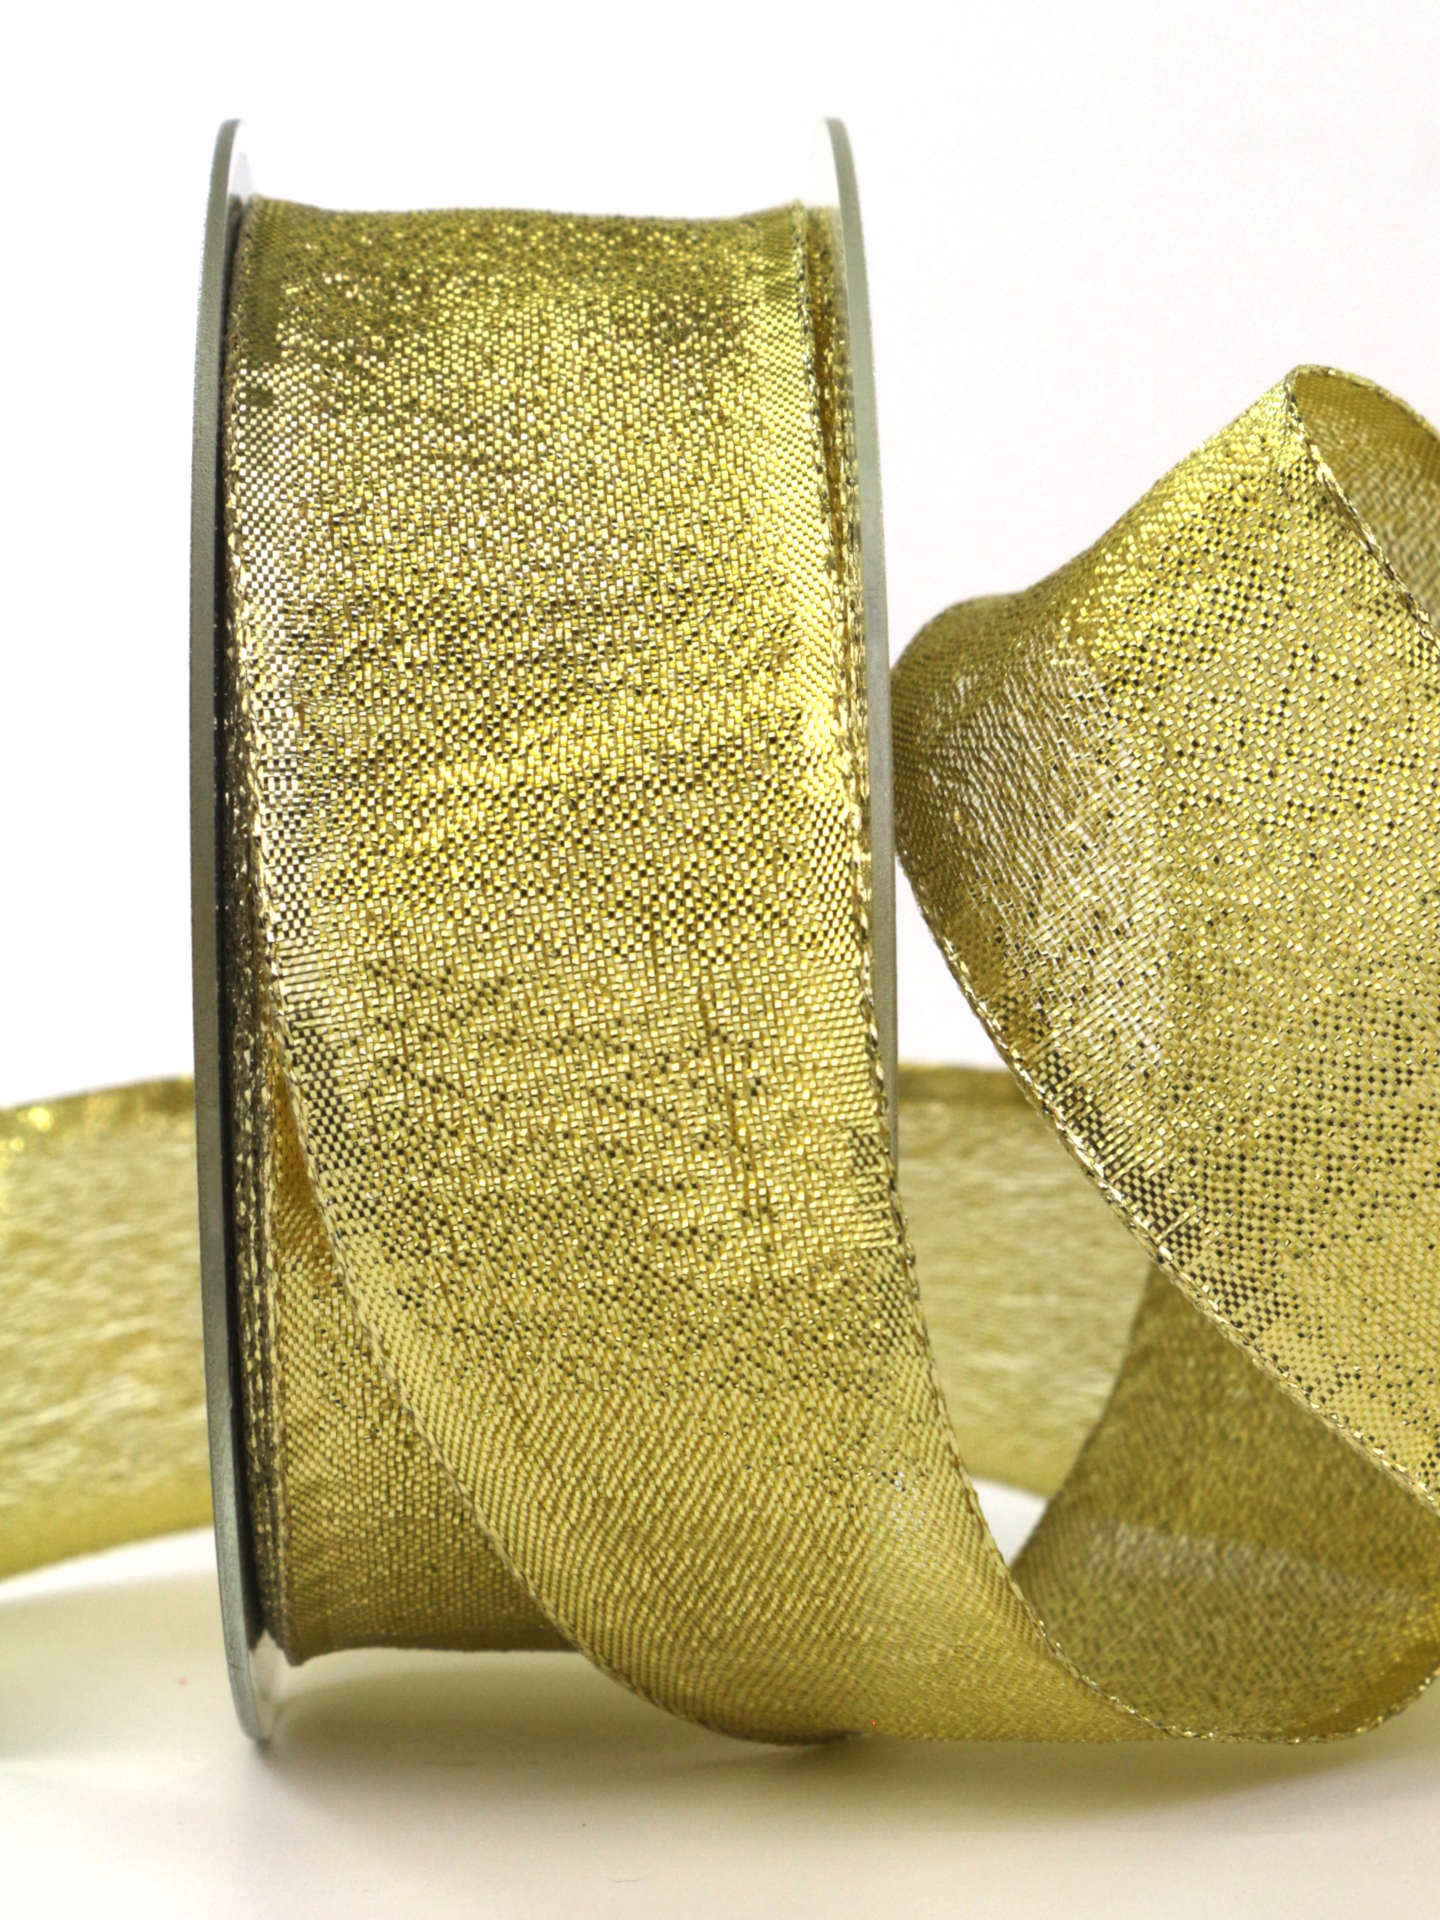 Goldband „Brokat“, gold, 40 mm breit, 25 m Rolle - geschenkband-weihnachten-dauersortiment, weihnachtsband, geschenkband-weihnachten, weihnachtsbaender